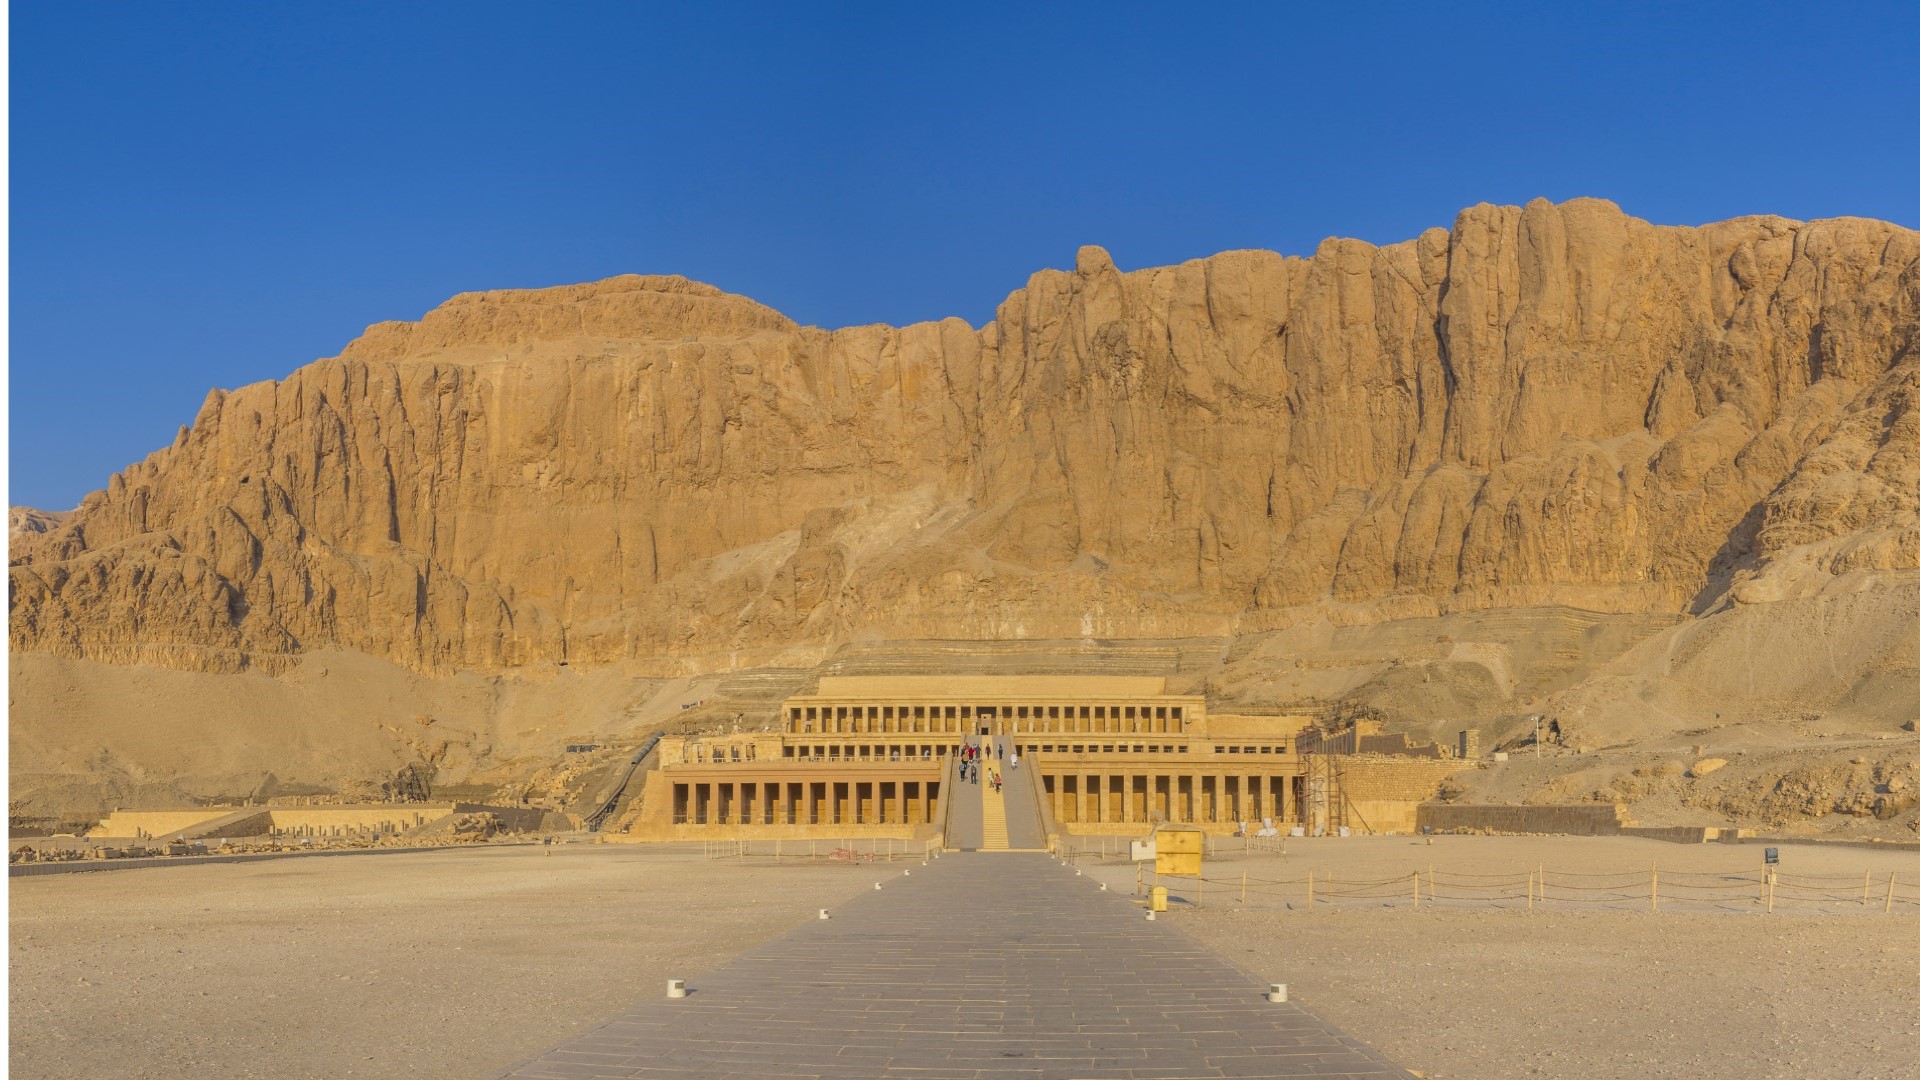 Luksor, dolina Bogova. Prelep prizor hrama koji se utapa u planine i pustinju.